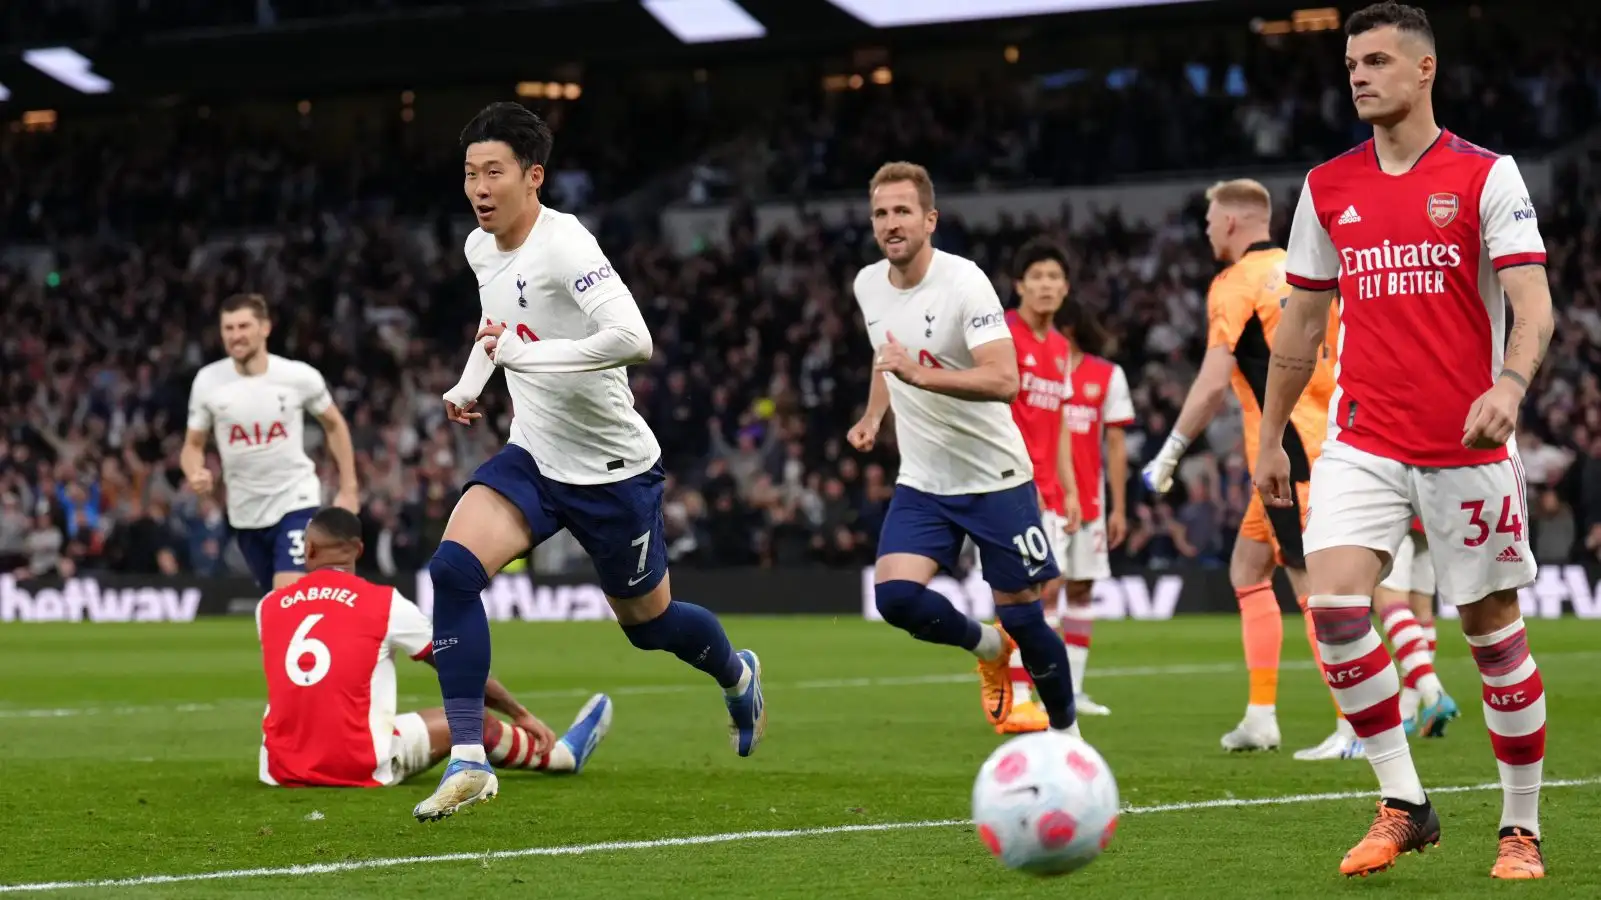 Heung-min Son celebrates scoring for Tottenham against Arsenal.